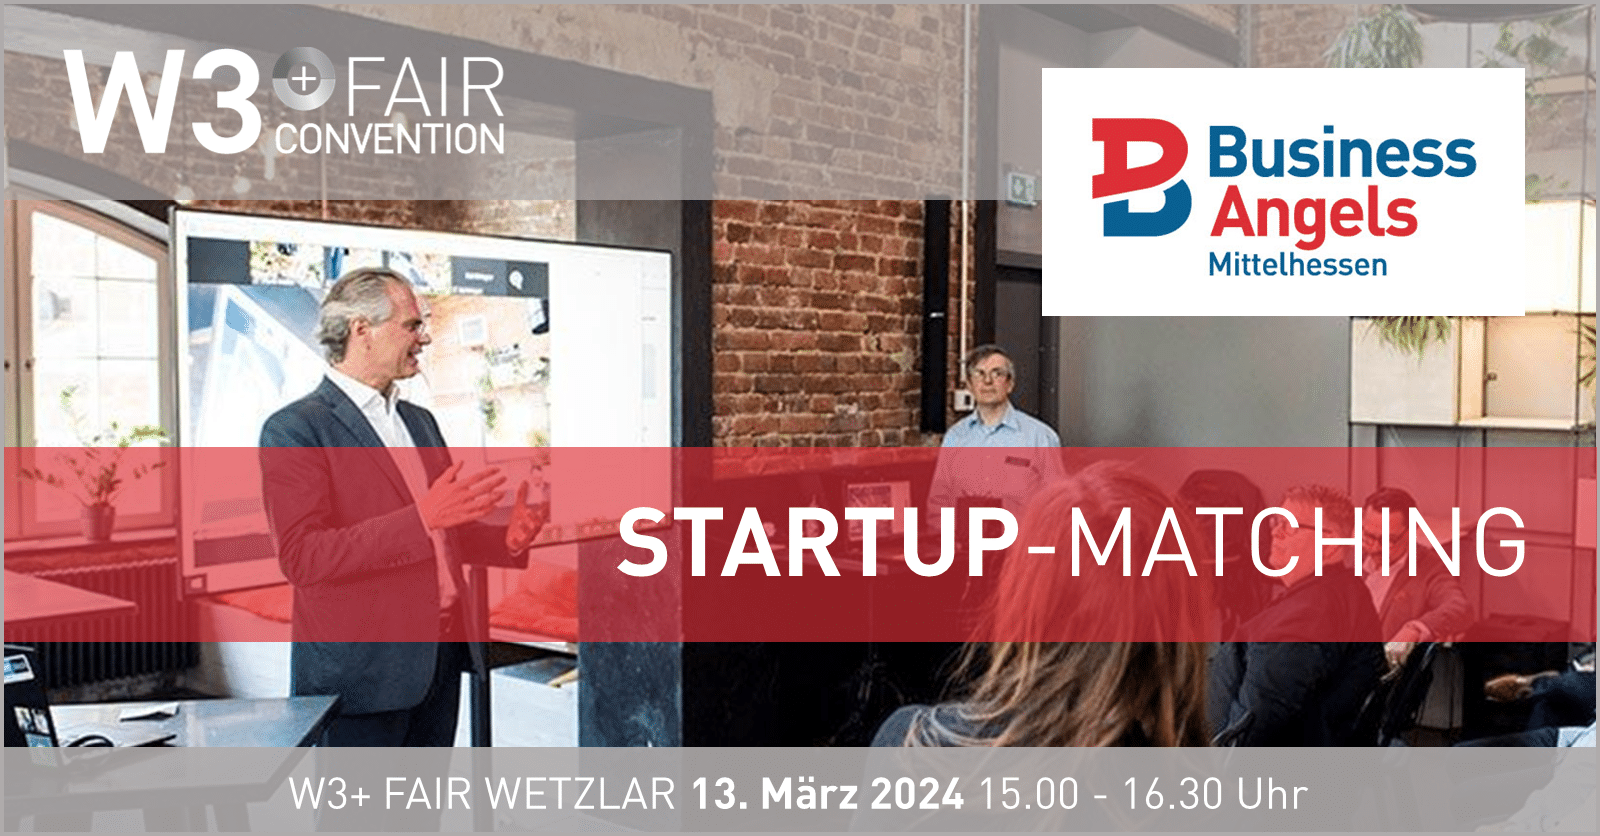 Business Angels Startup-Matching @ W3+ Fair Wetzlar 2024